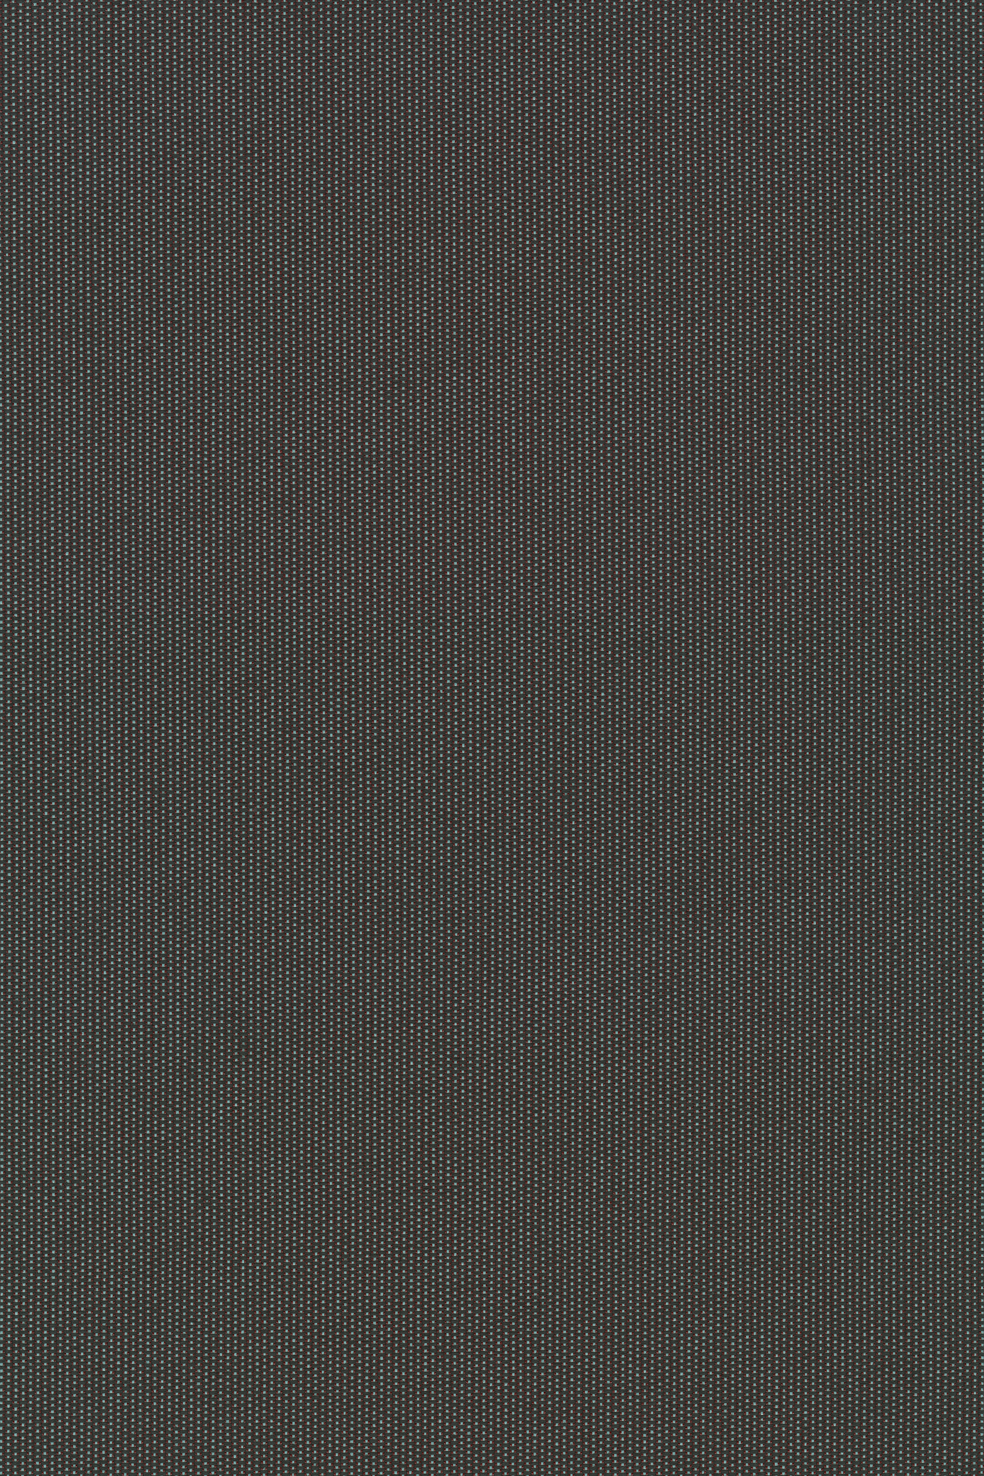 Fabric sample Patio Outdoor 970 grey